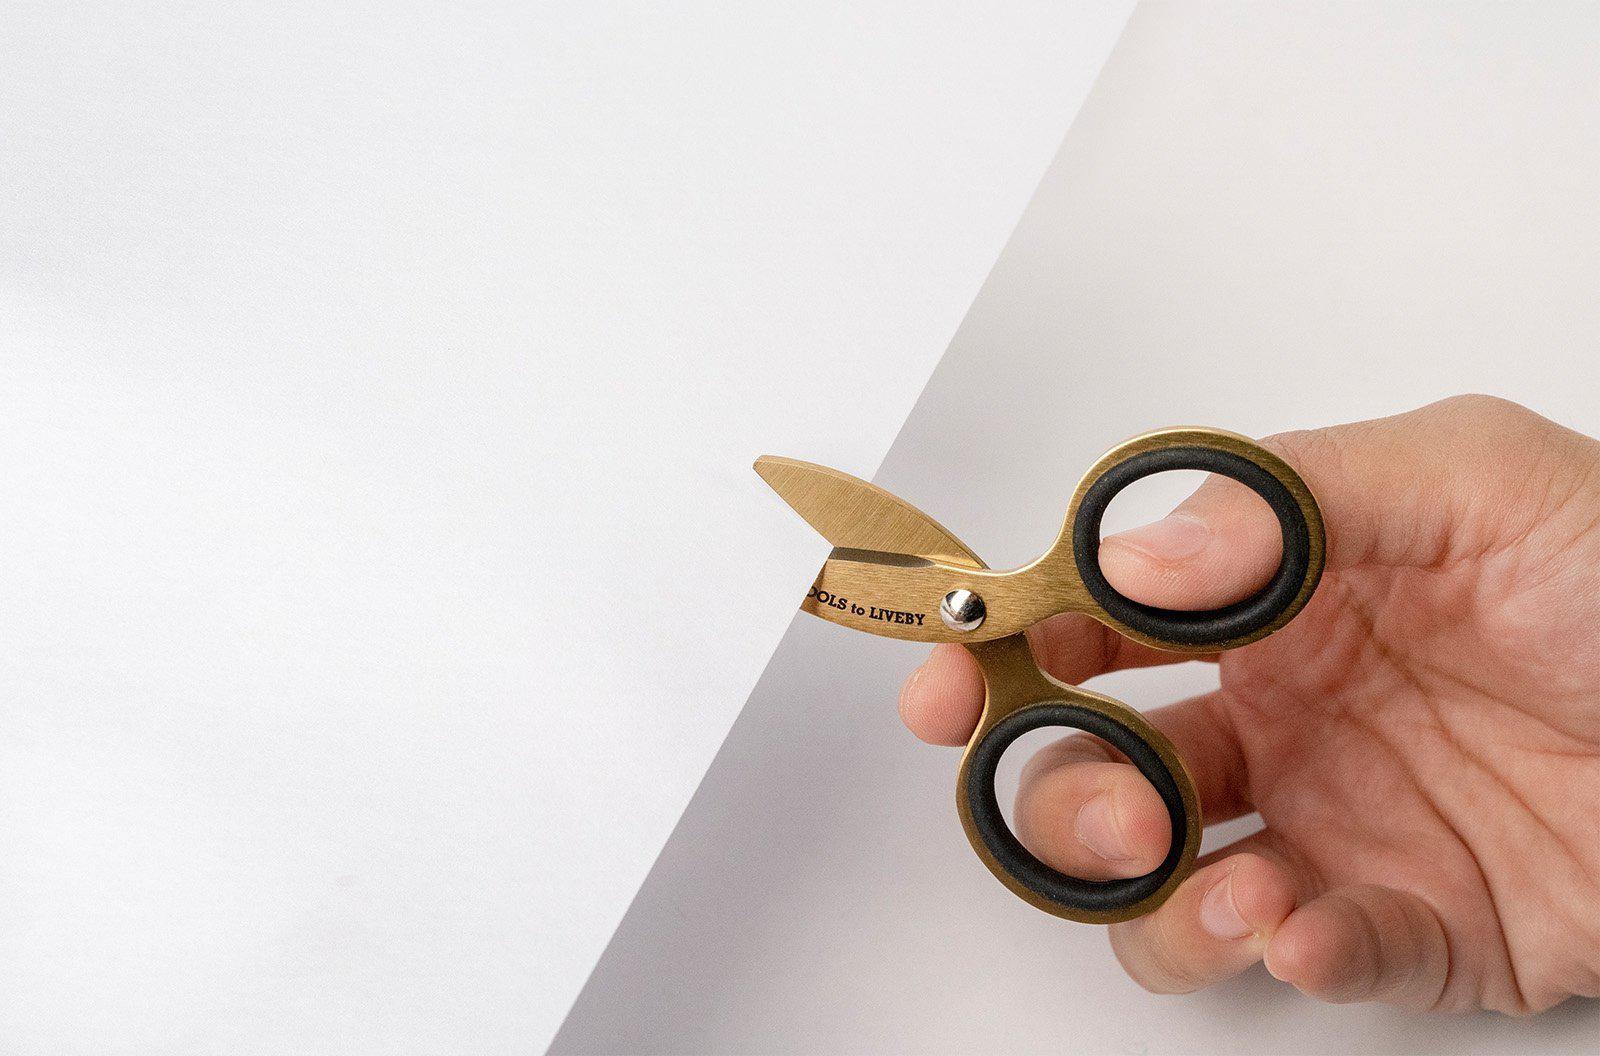 Mini scissors